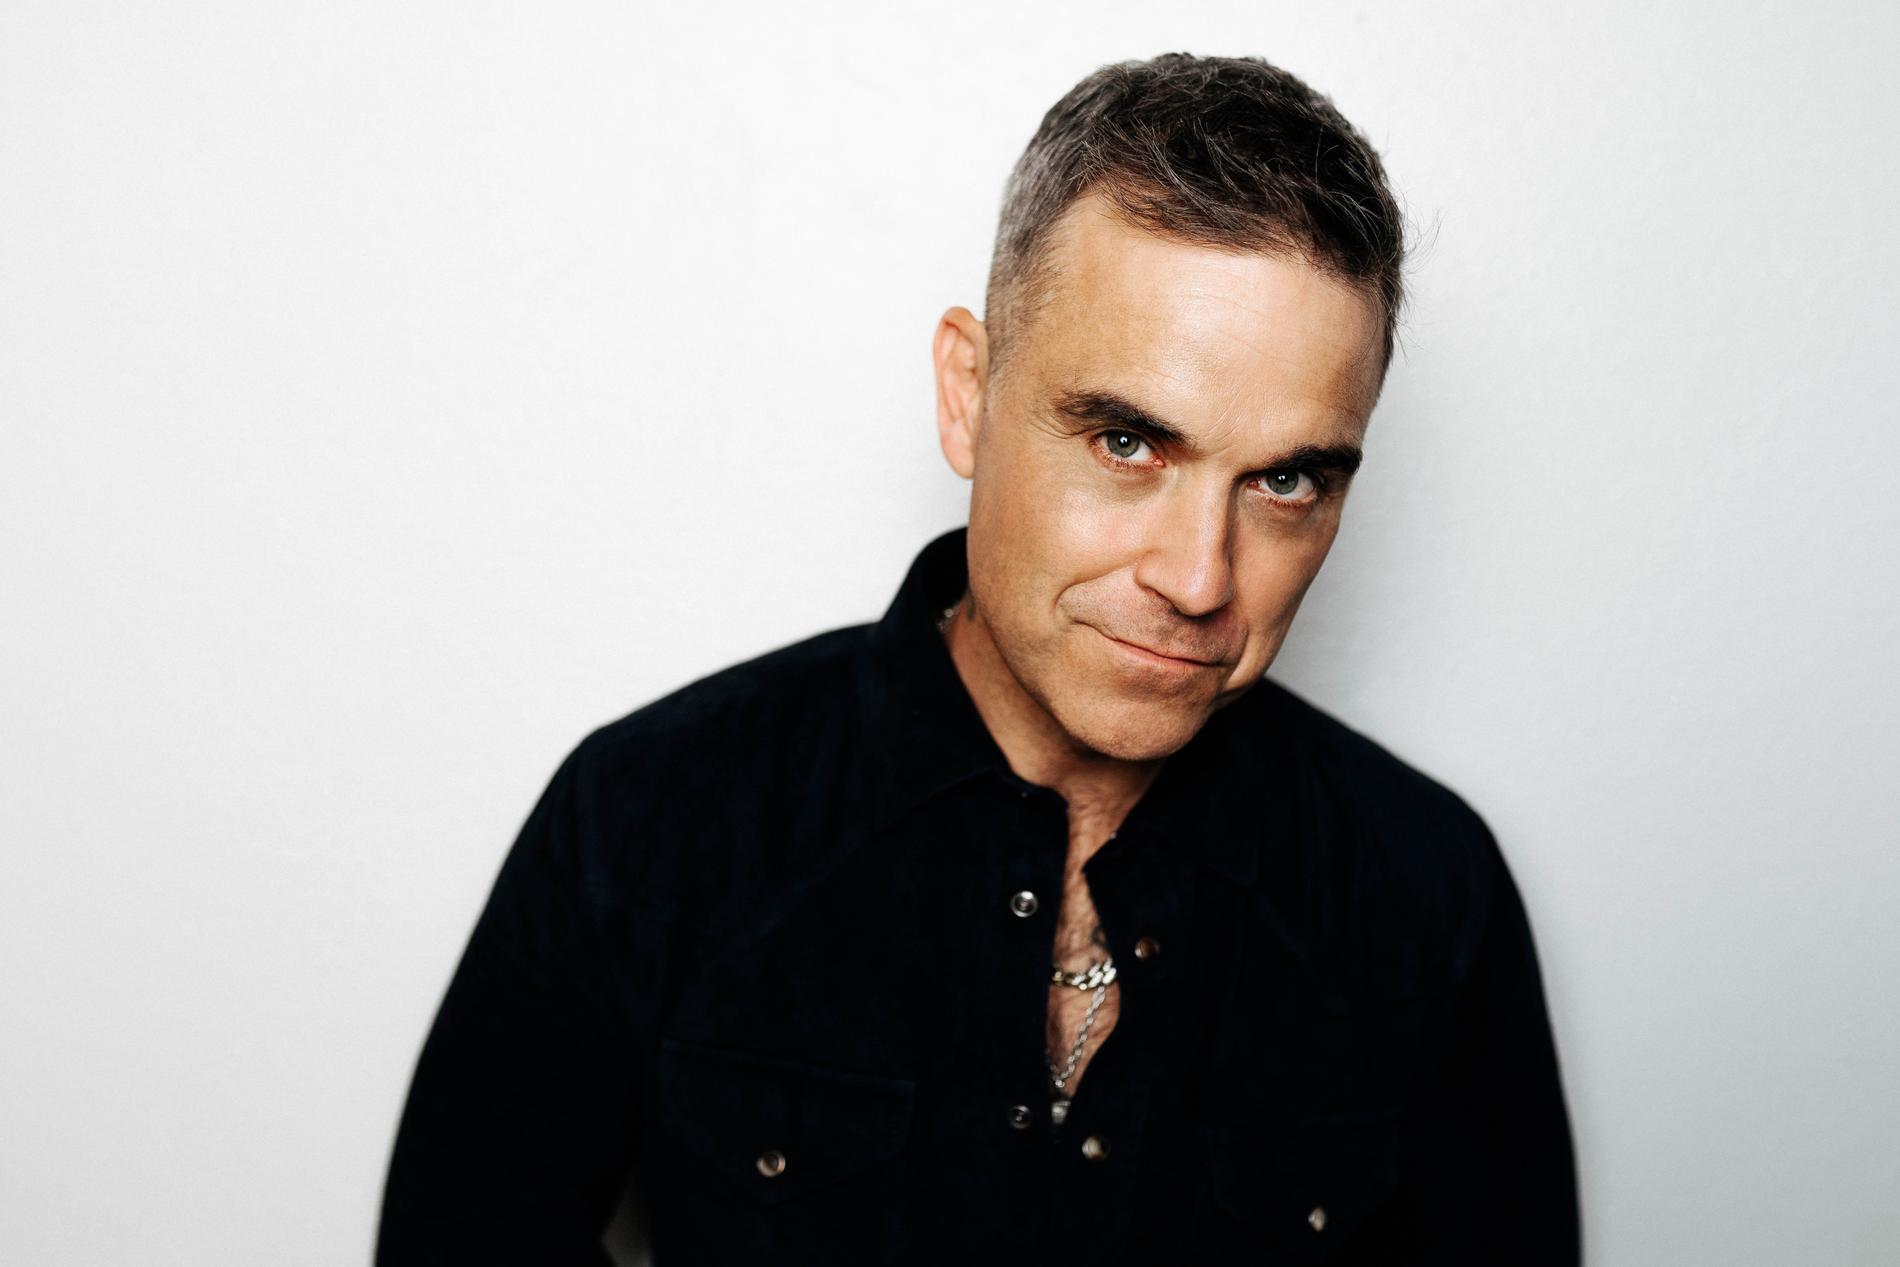 Robbie Williams firar 25 år som artist med kommande albumet ”XXV”, som innehåller nya versioner av klassiska hits och fyra helt nya låtar.